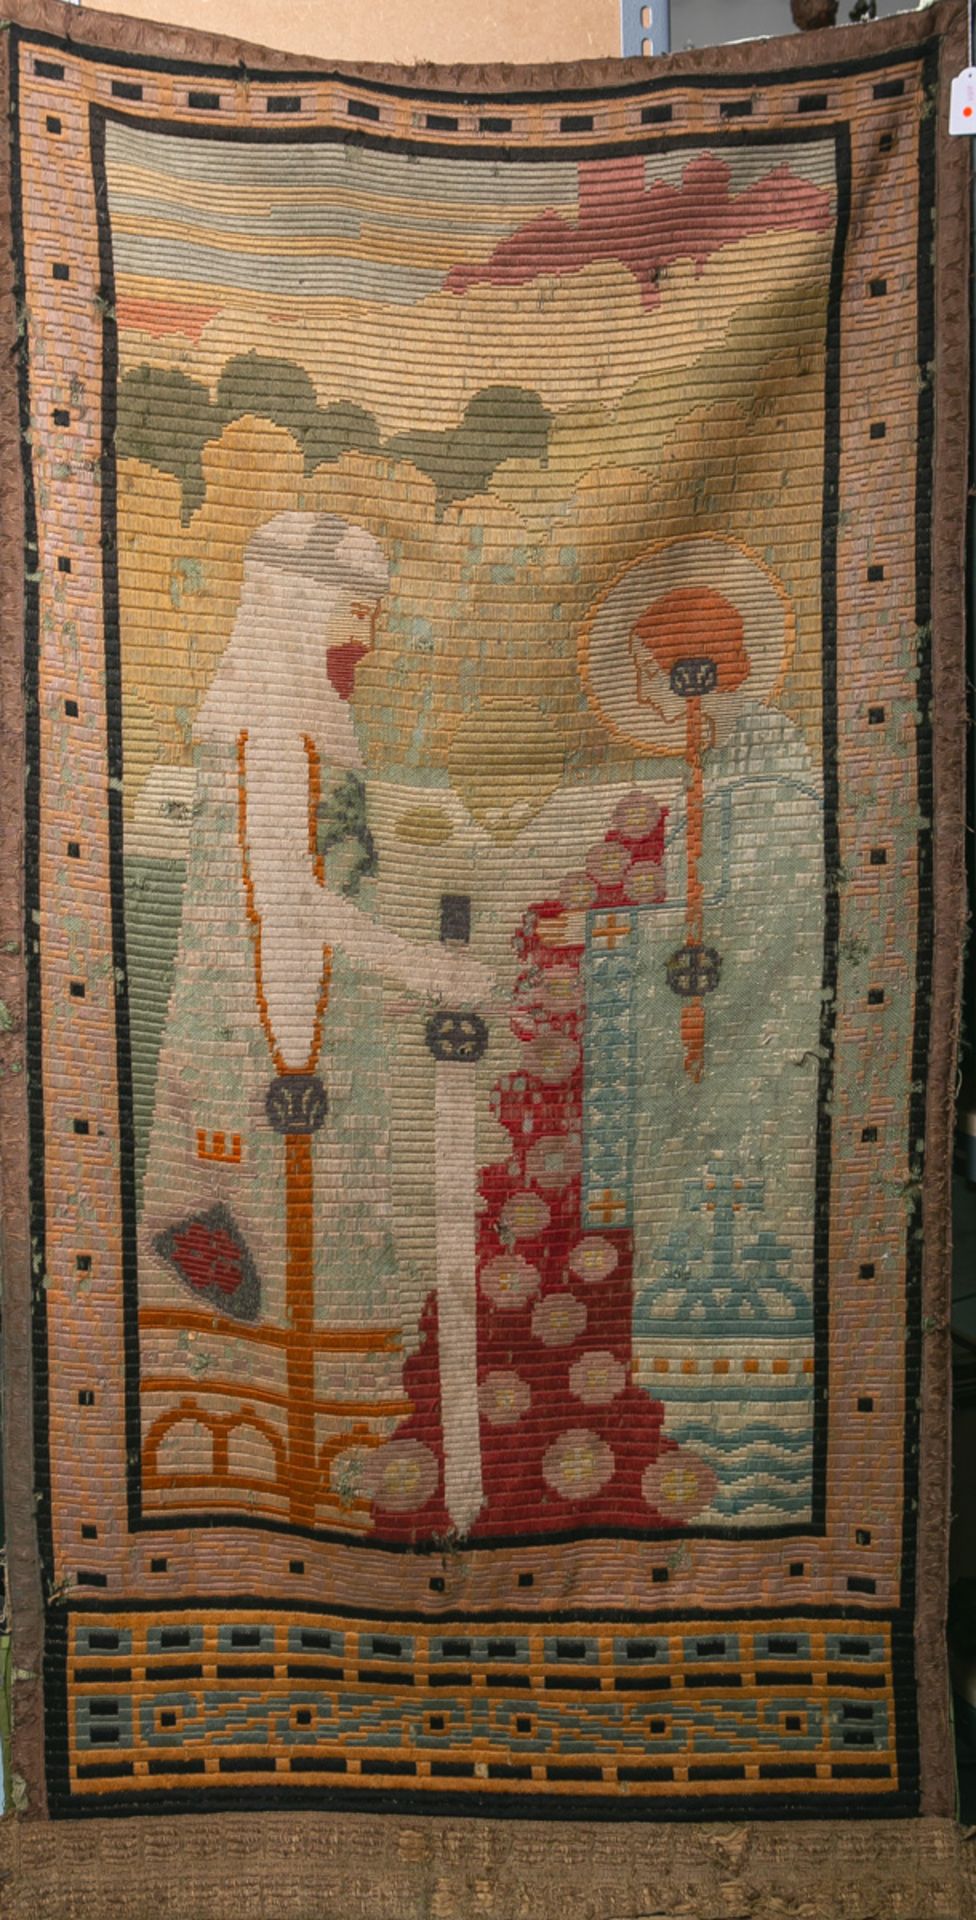 Wandbehang (wohl Wien, wohl um 1920)